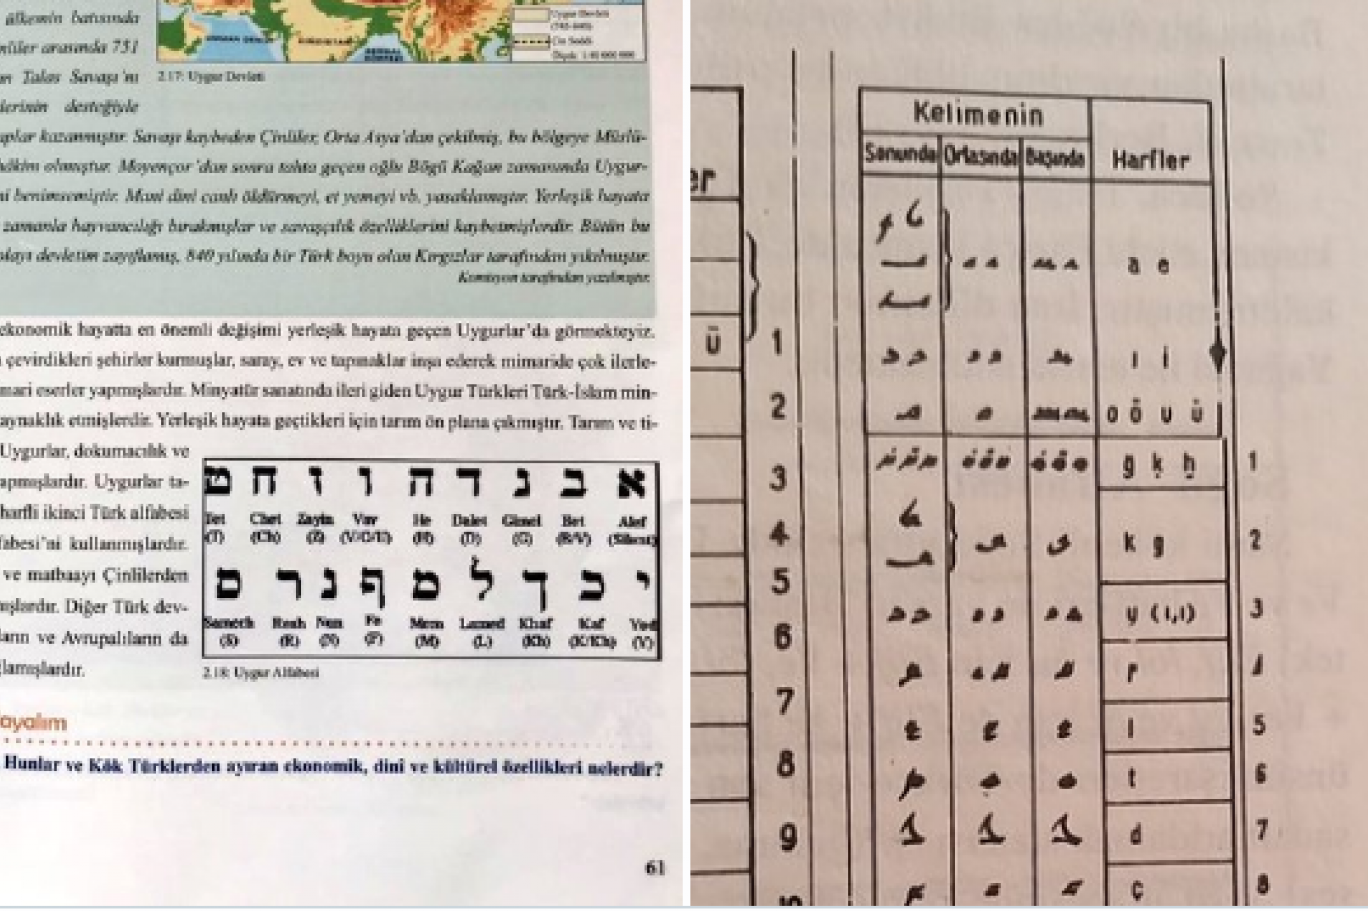 Իսրայելի պետական լեզվի այբուբենը Թուրքիայում ներկայացվել է որպես թյուրքական լեզվի՝ ույղուրերենի այբուբեն